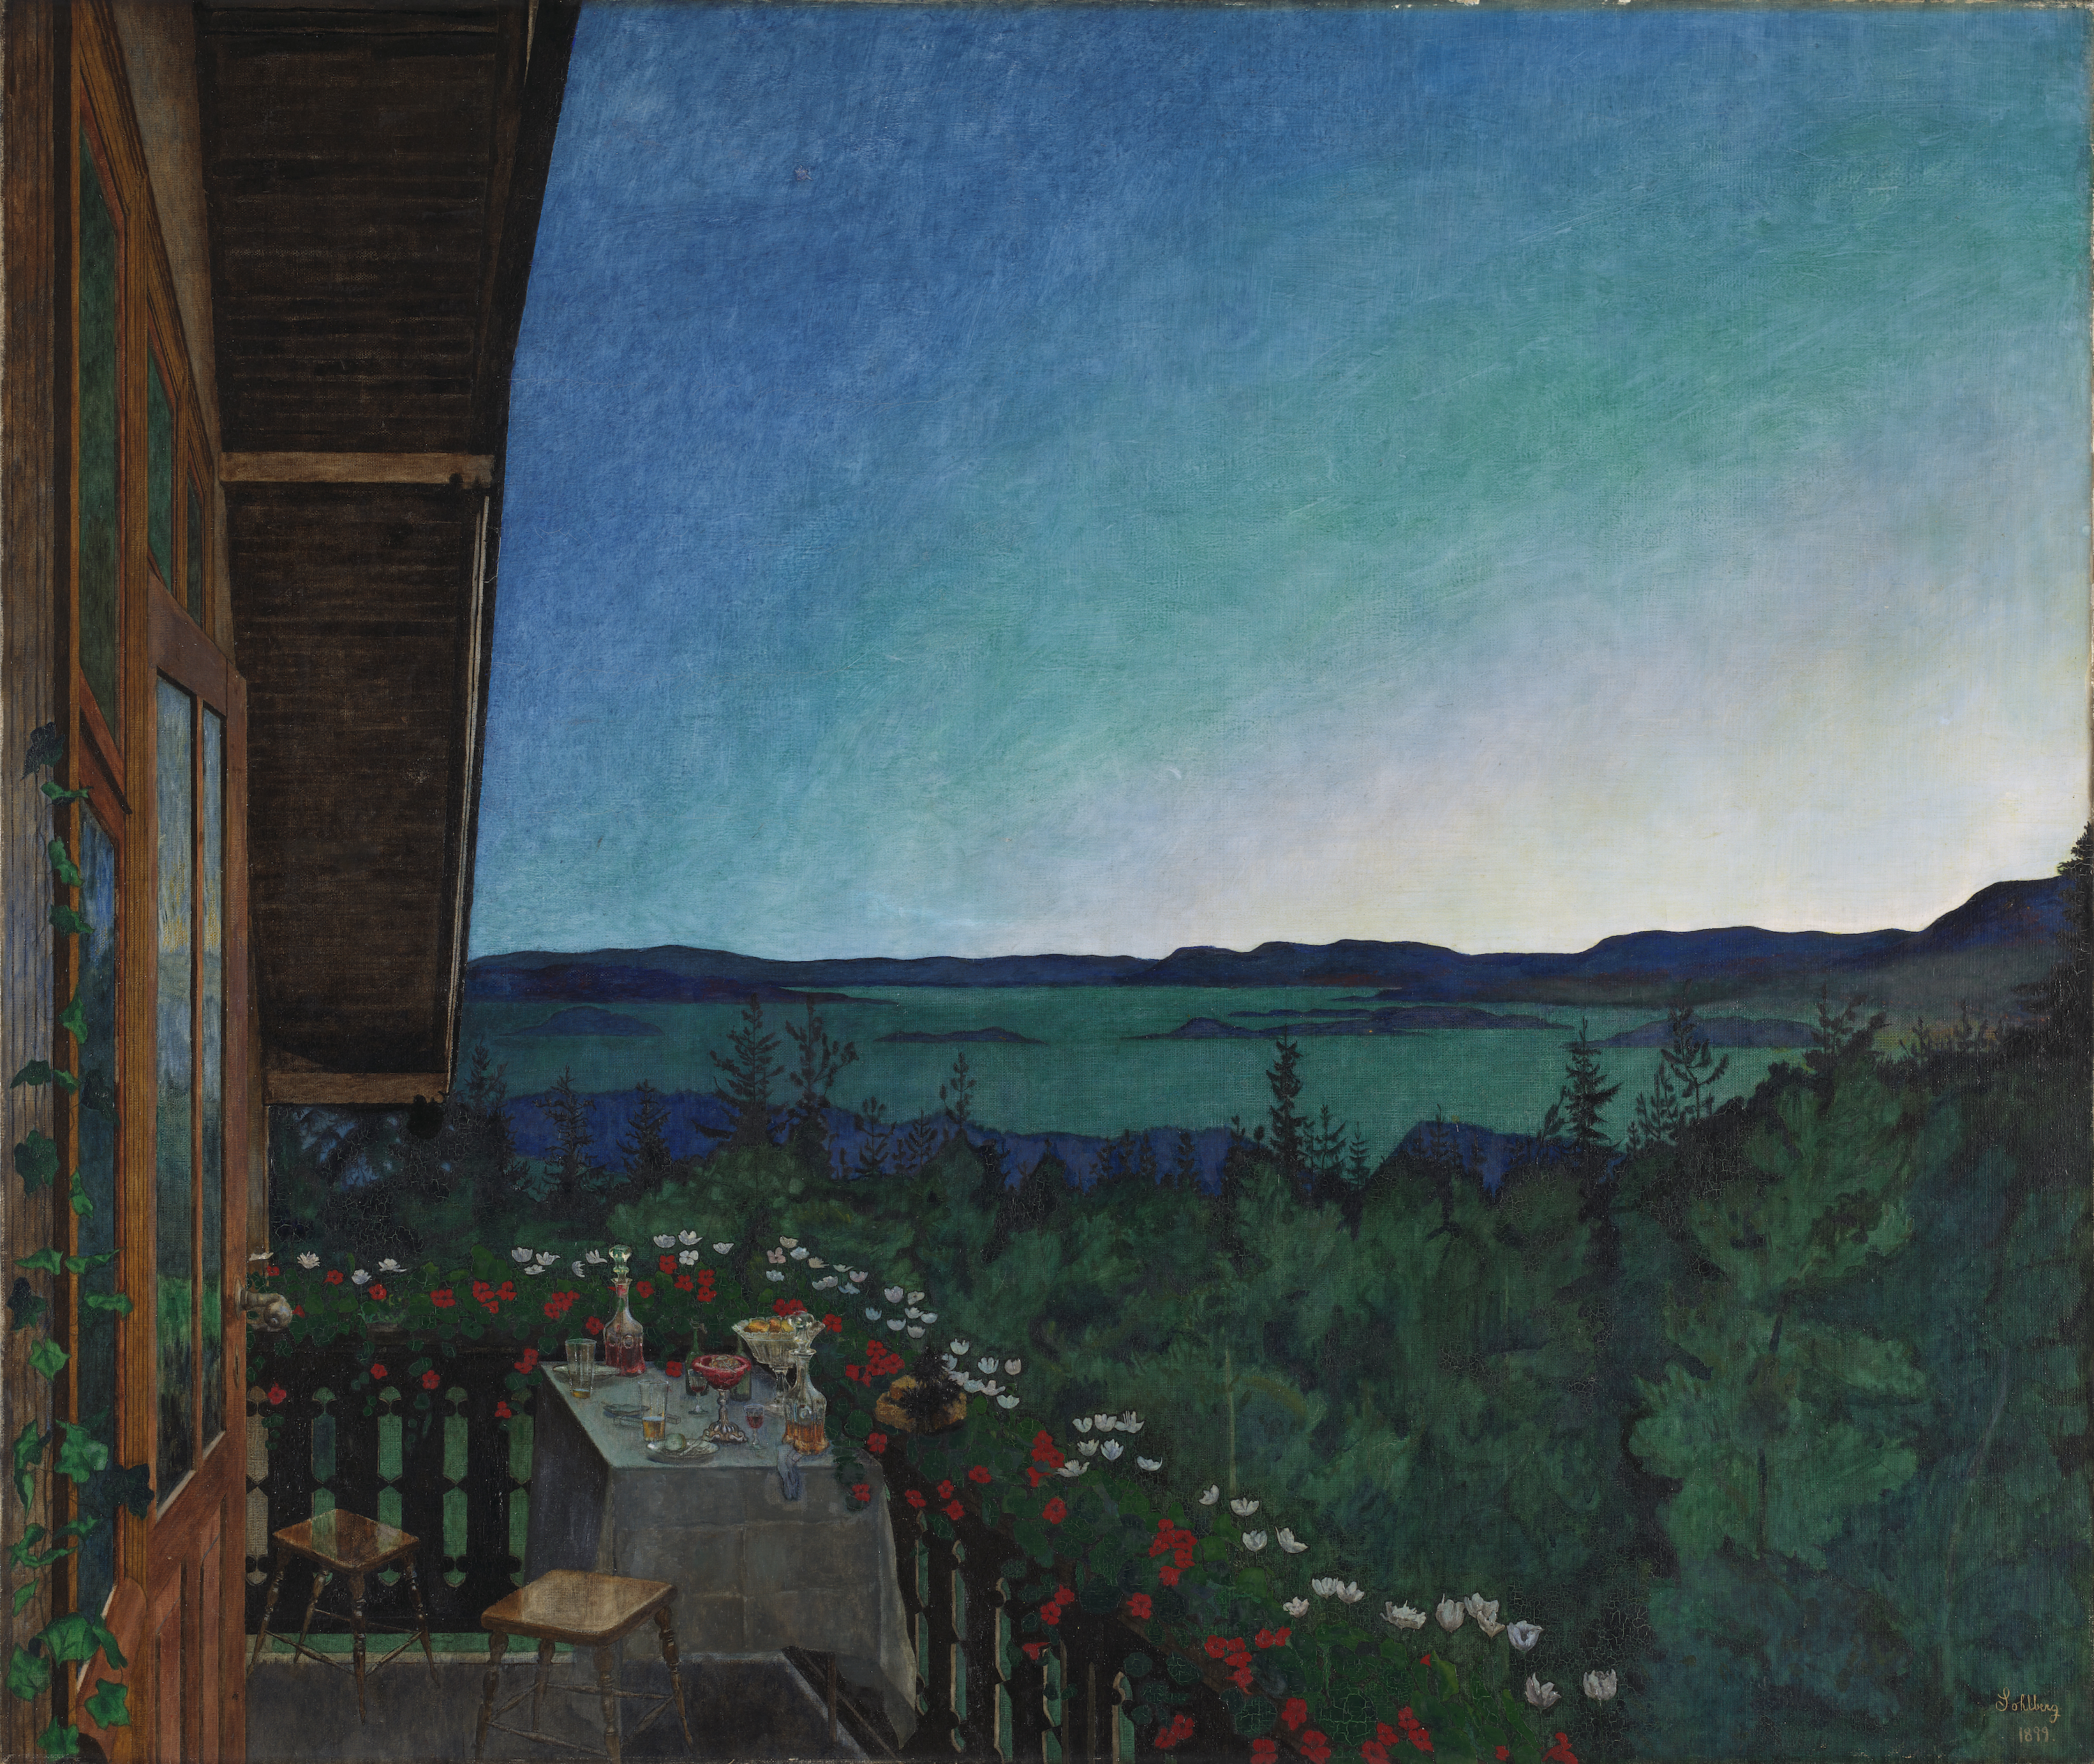 Letní noc by Harald Sohlberg - 1899 - 114,5 x 135,5 cm 